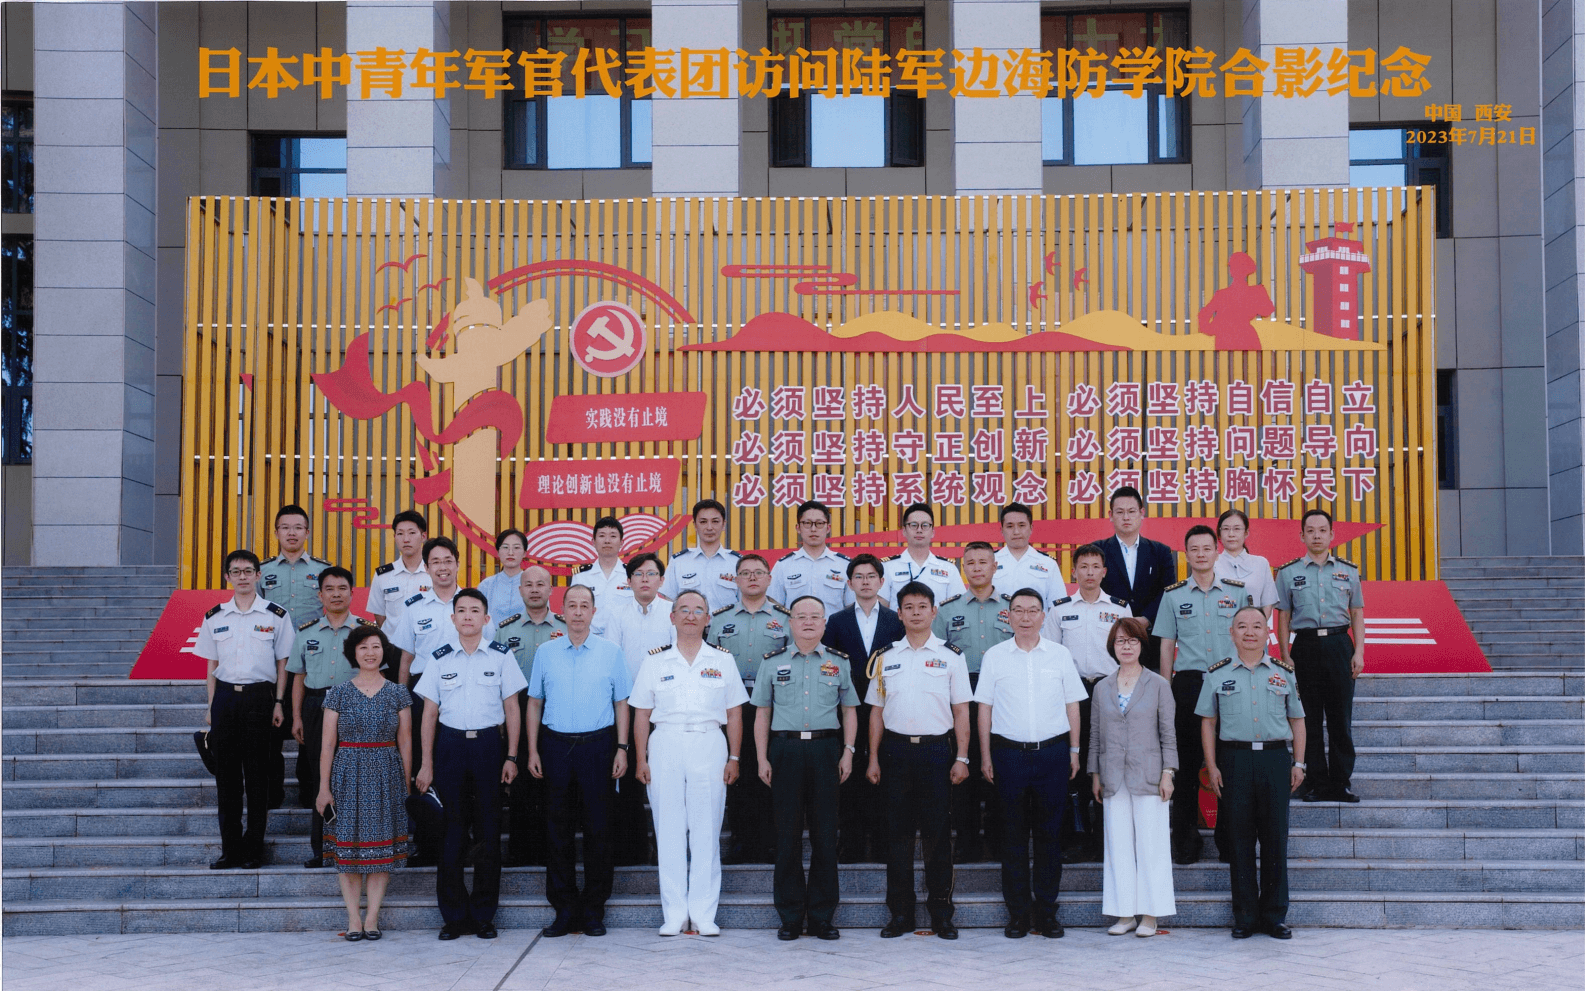 日方代表團訪問中國人民解放軍陸軍邊海防學院。